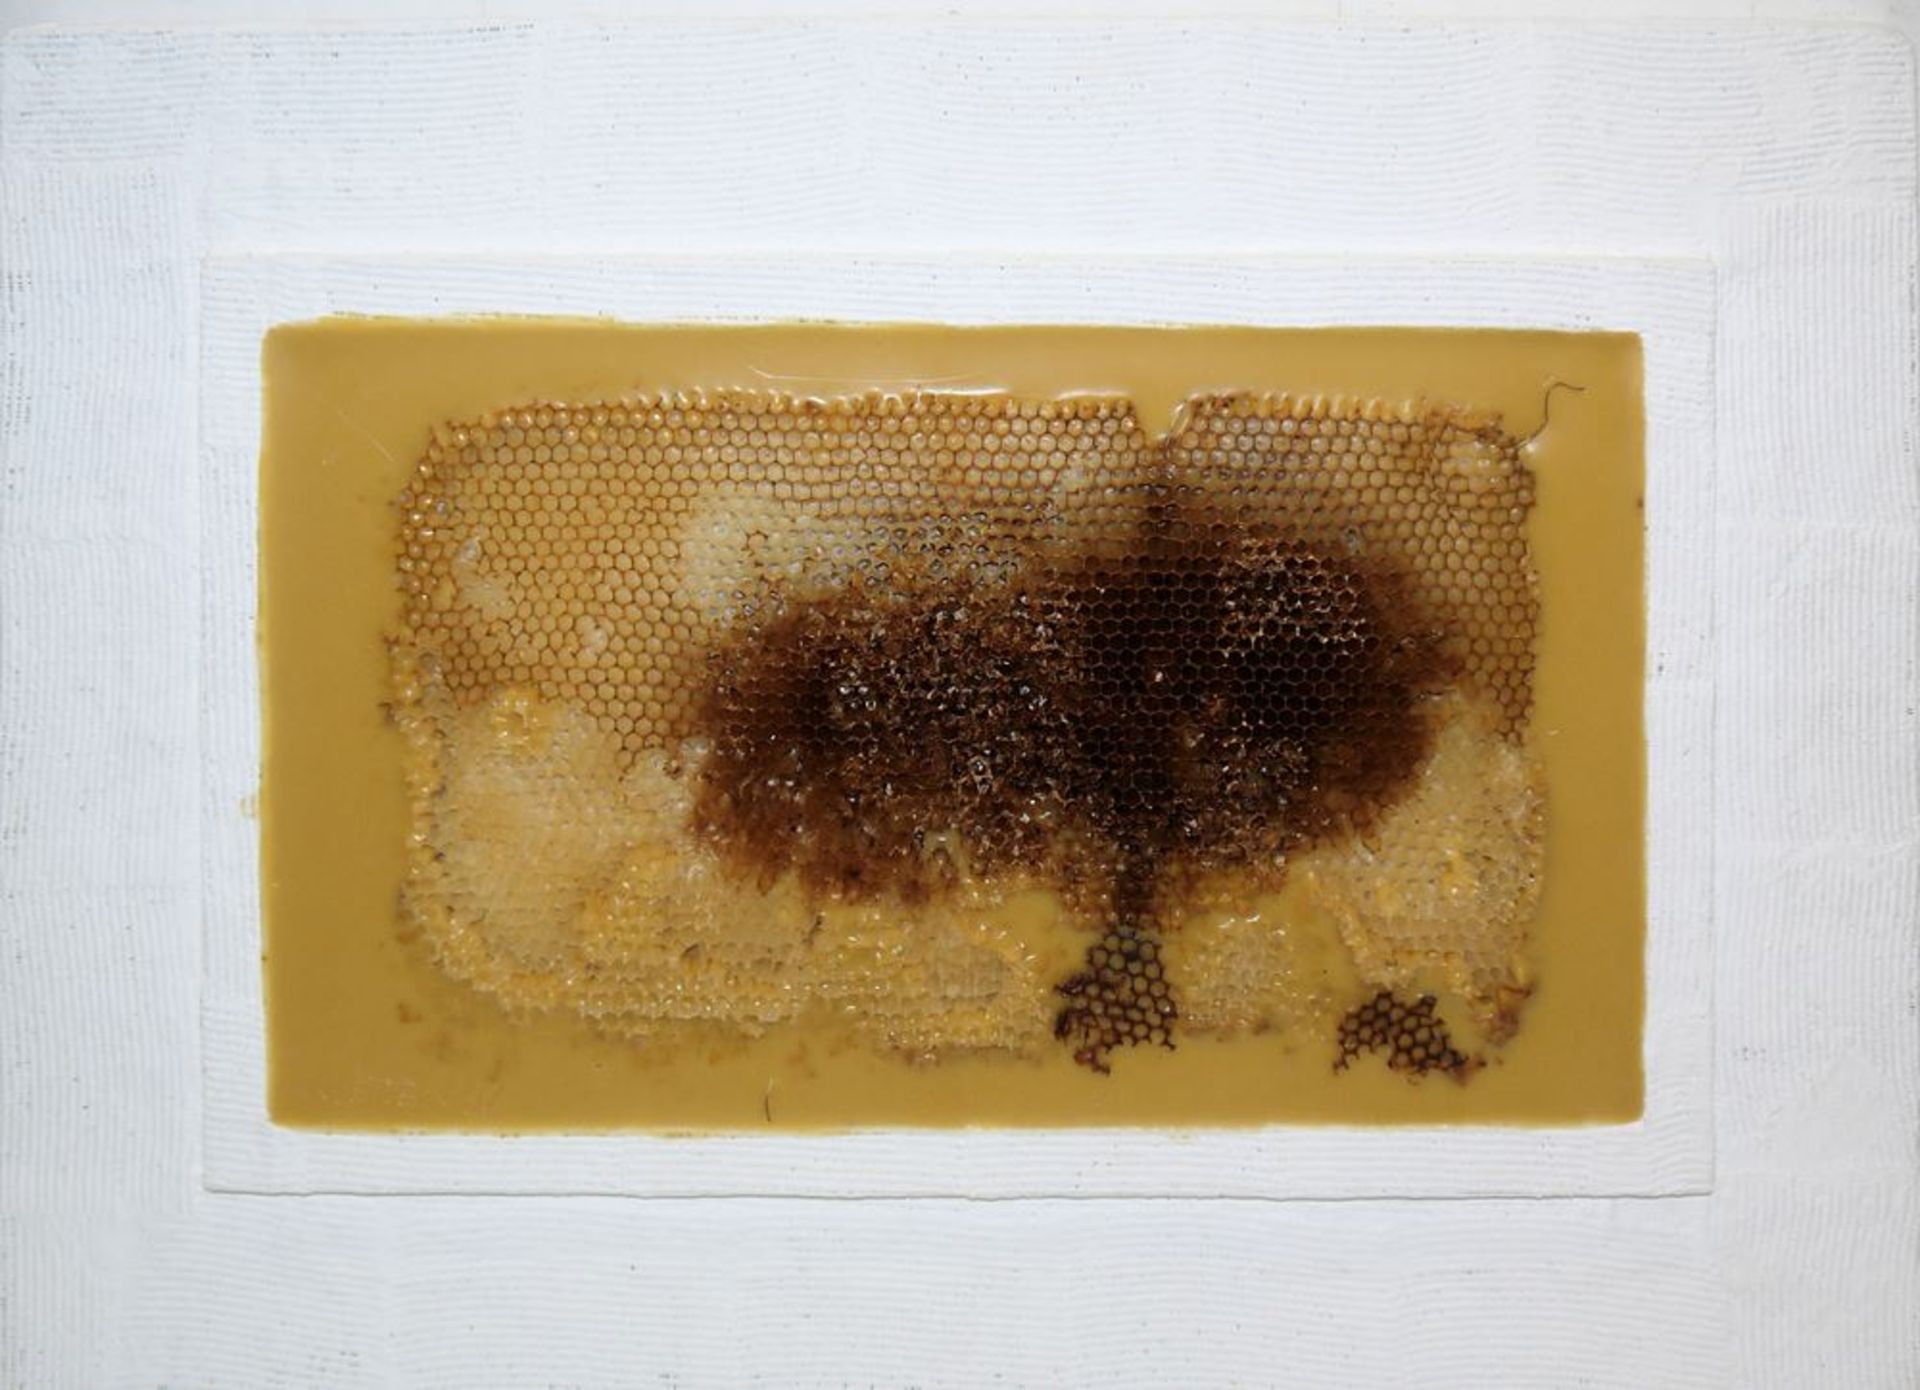 Johannes Metten, "Mutationen in Wachs", 2 signierte Wachs-Reliefs mit Bienenwaben von 1997 - Image 4 of 6